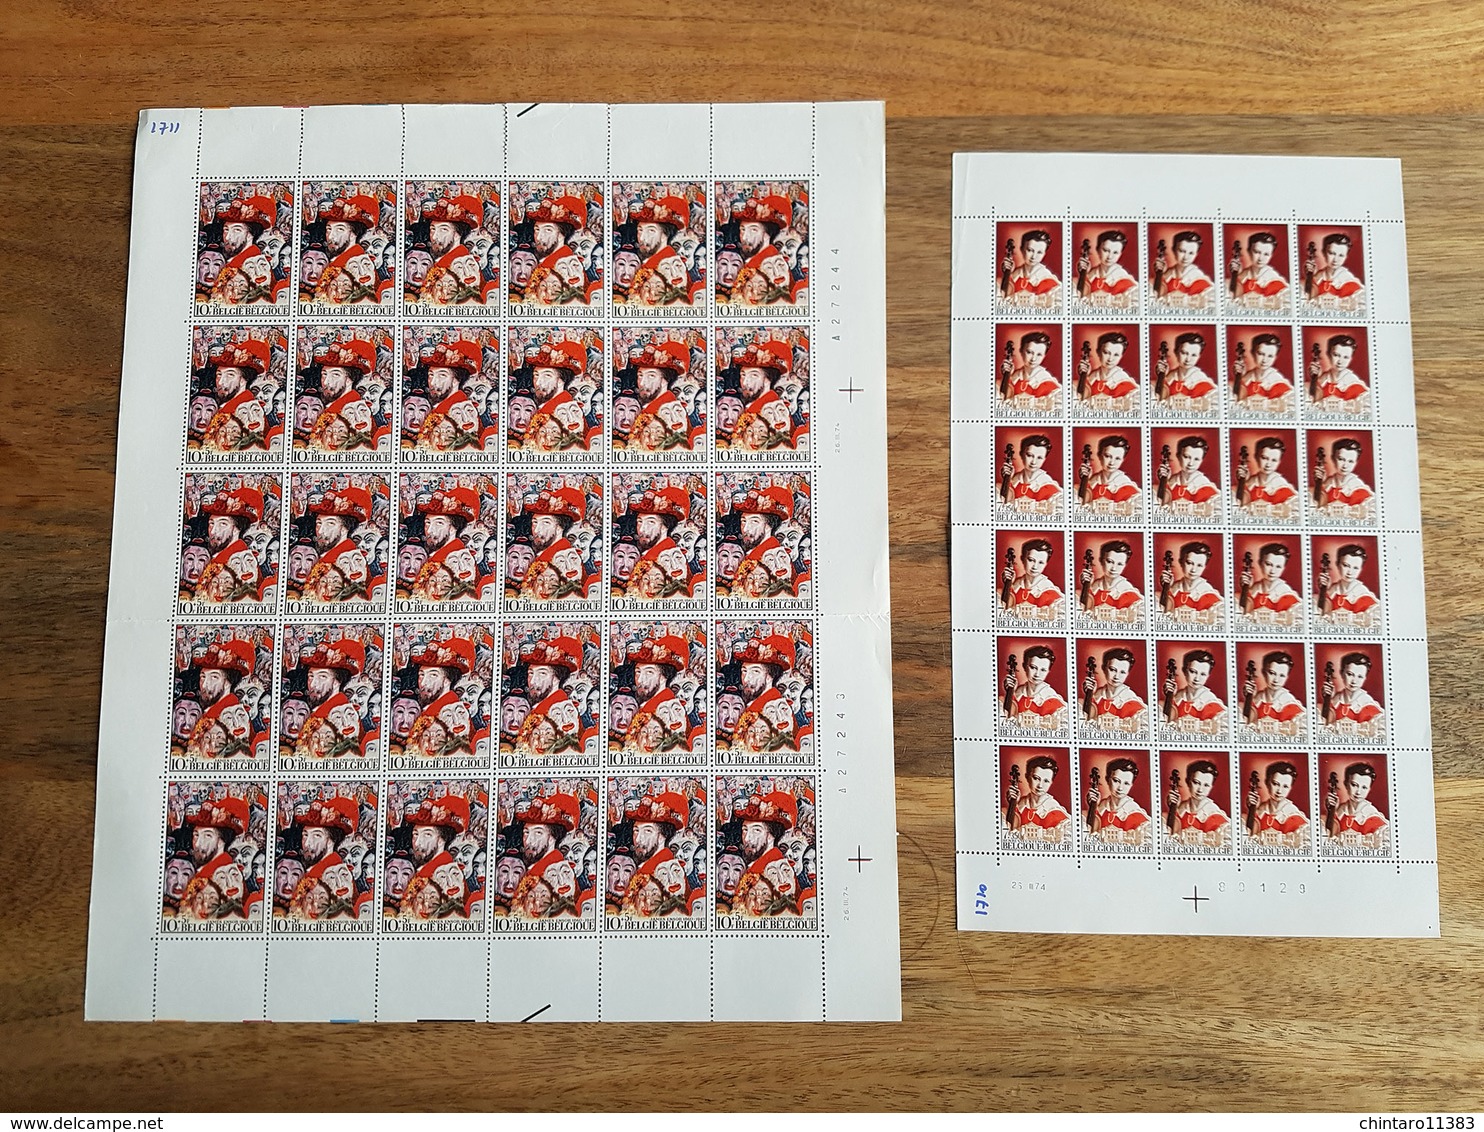 Lot feuilles complètes de timbres Belgique - Année 1974